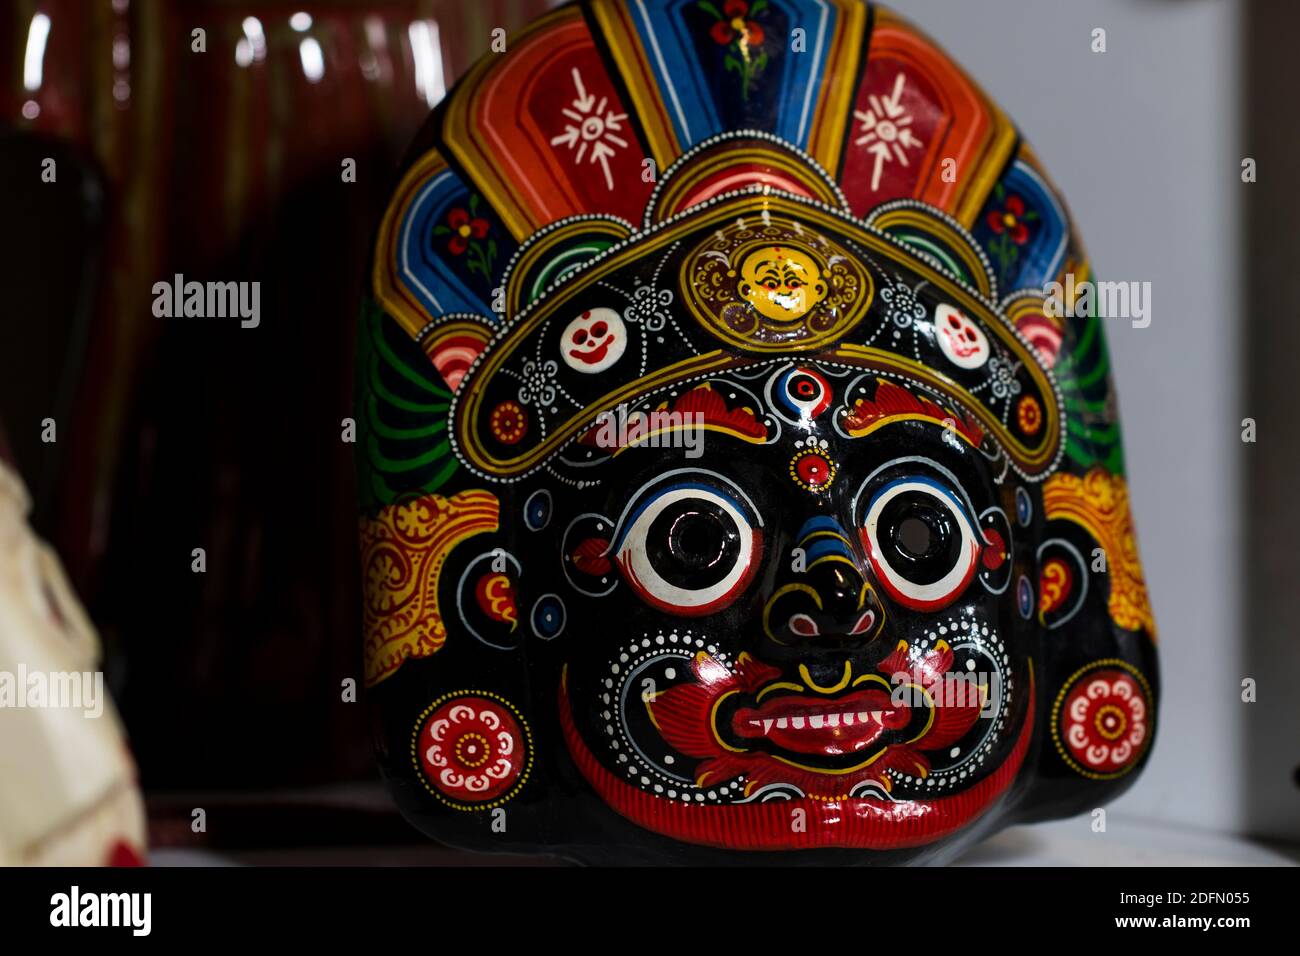 Masken schließen handgeschnitzte Holzmasken aus Nepal. Mystische Gottheiten Gesichter von Hand in Holz geschnitzt. Nahaufnahme der Masken. Stockfoto